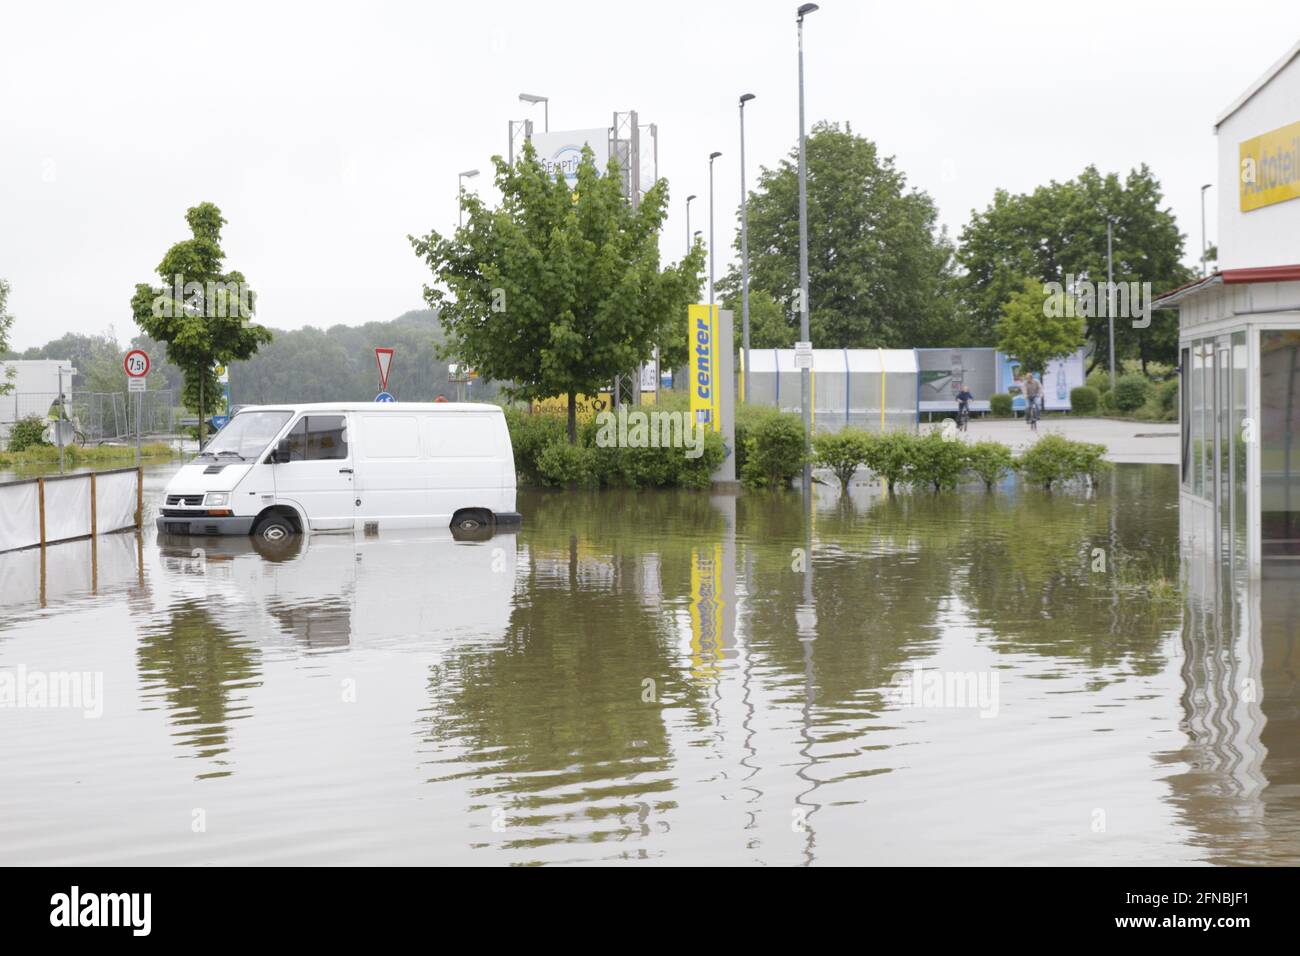 Transporter bei Hochwasser auf einem Parkplatz - Naturgewalt, Stark Regen - unter Wasser Foto Stock